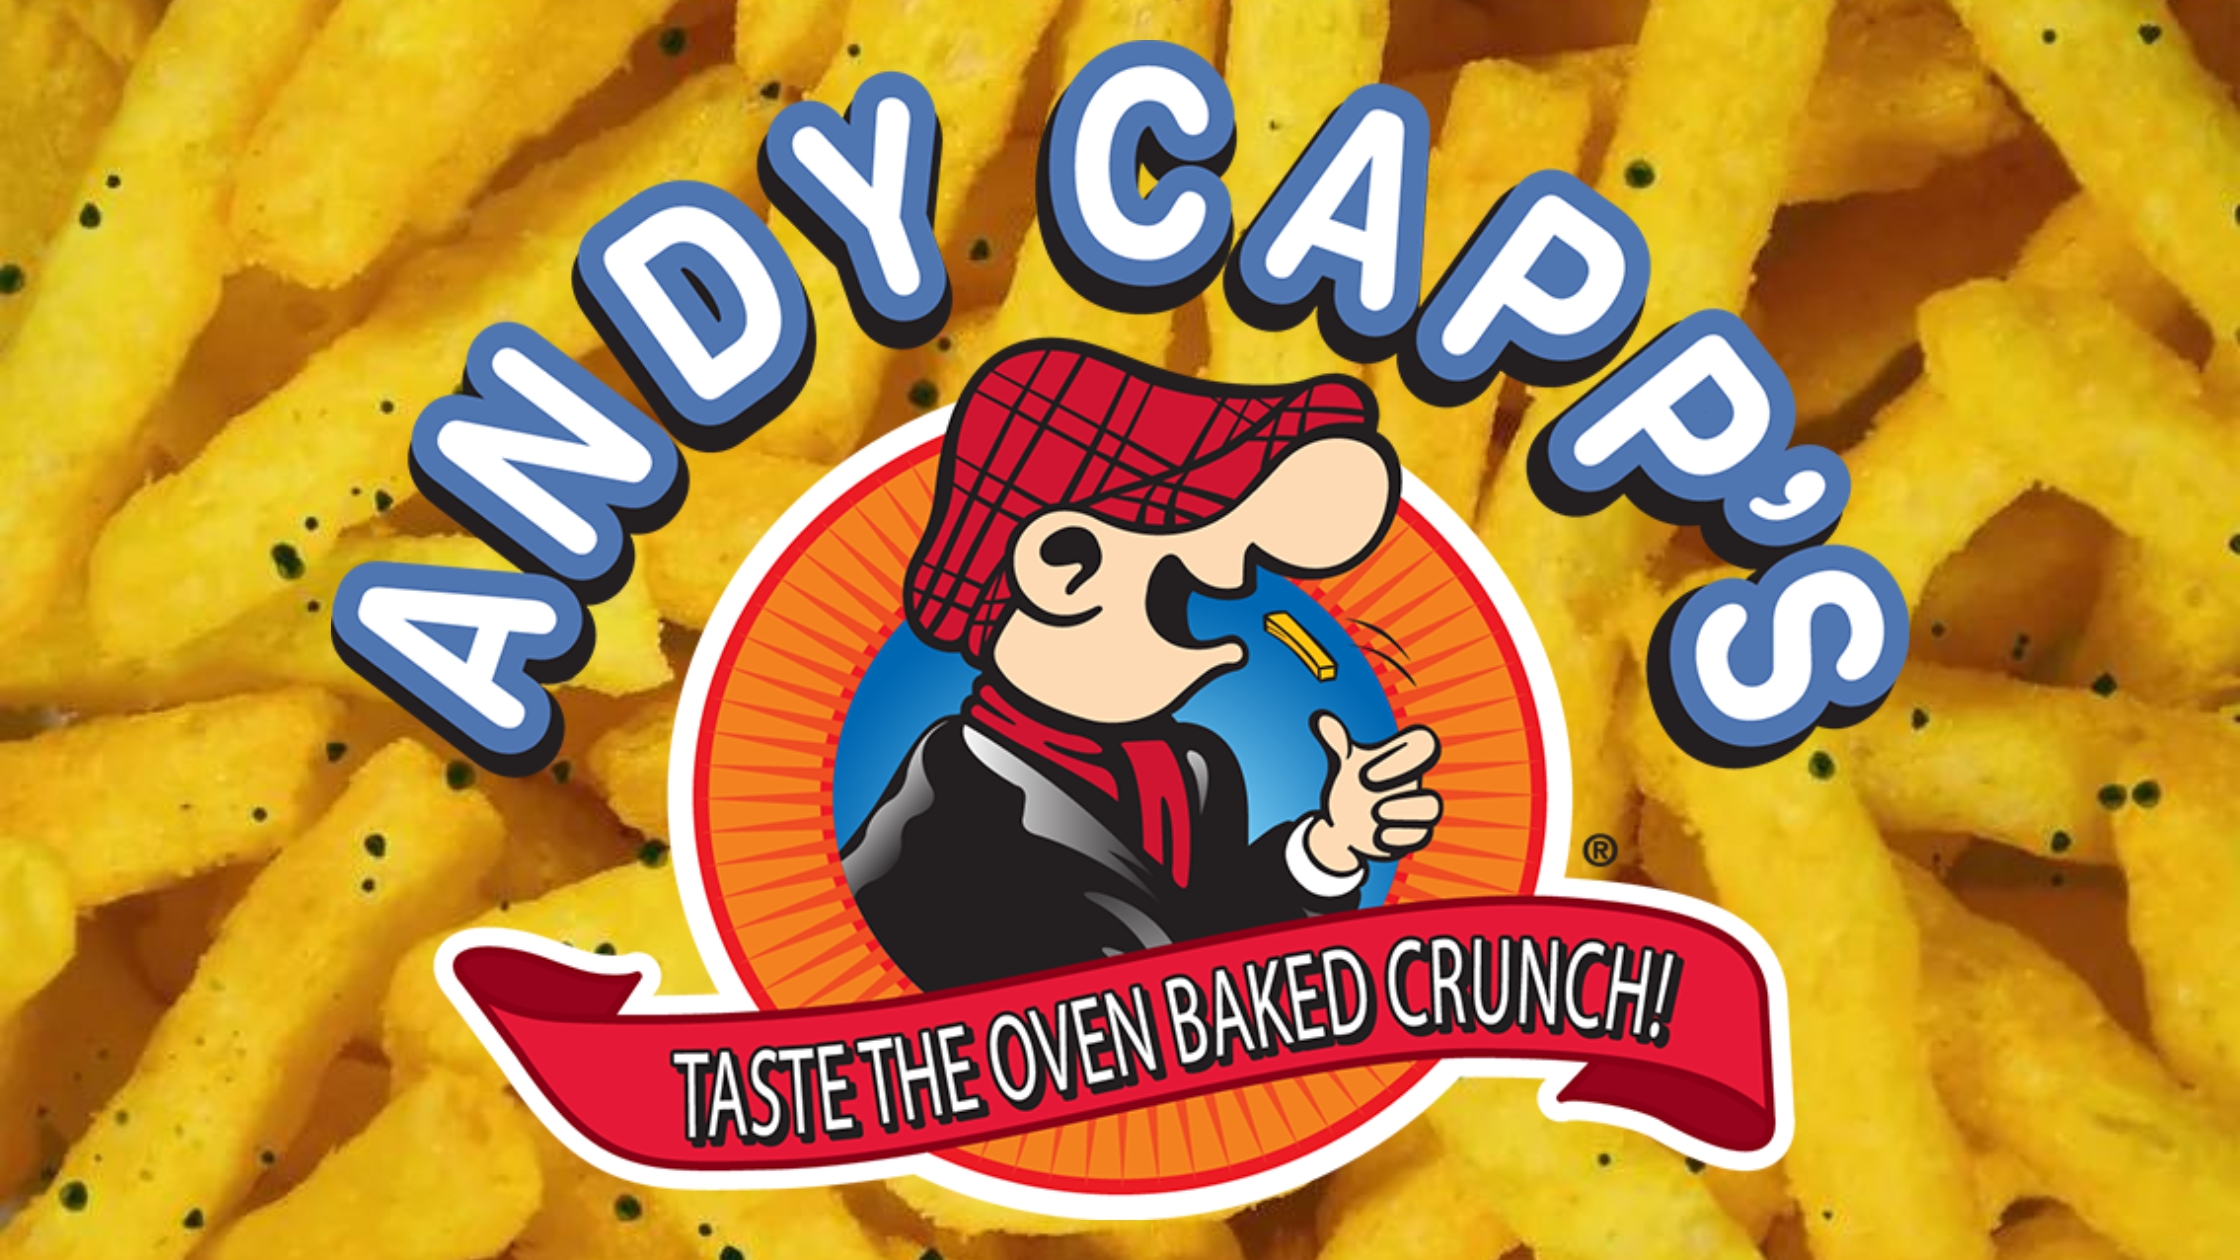 Andy Capp's Big Bag Hot Fries